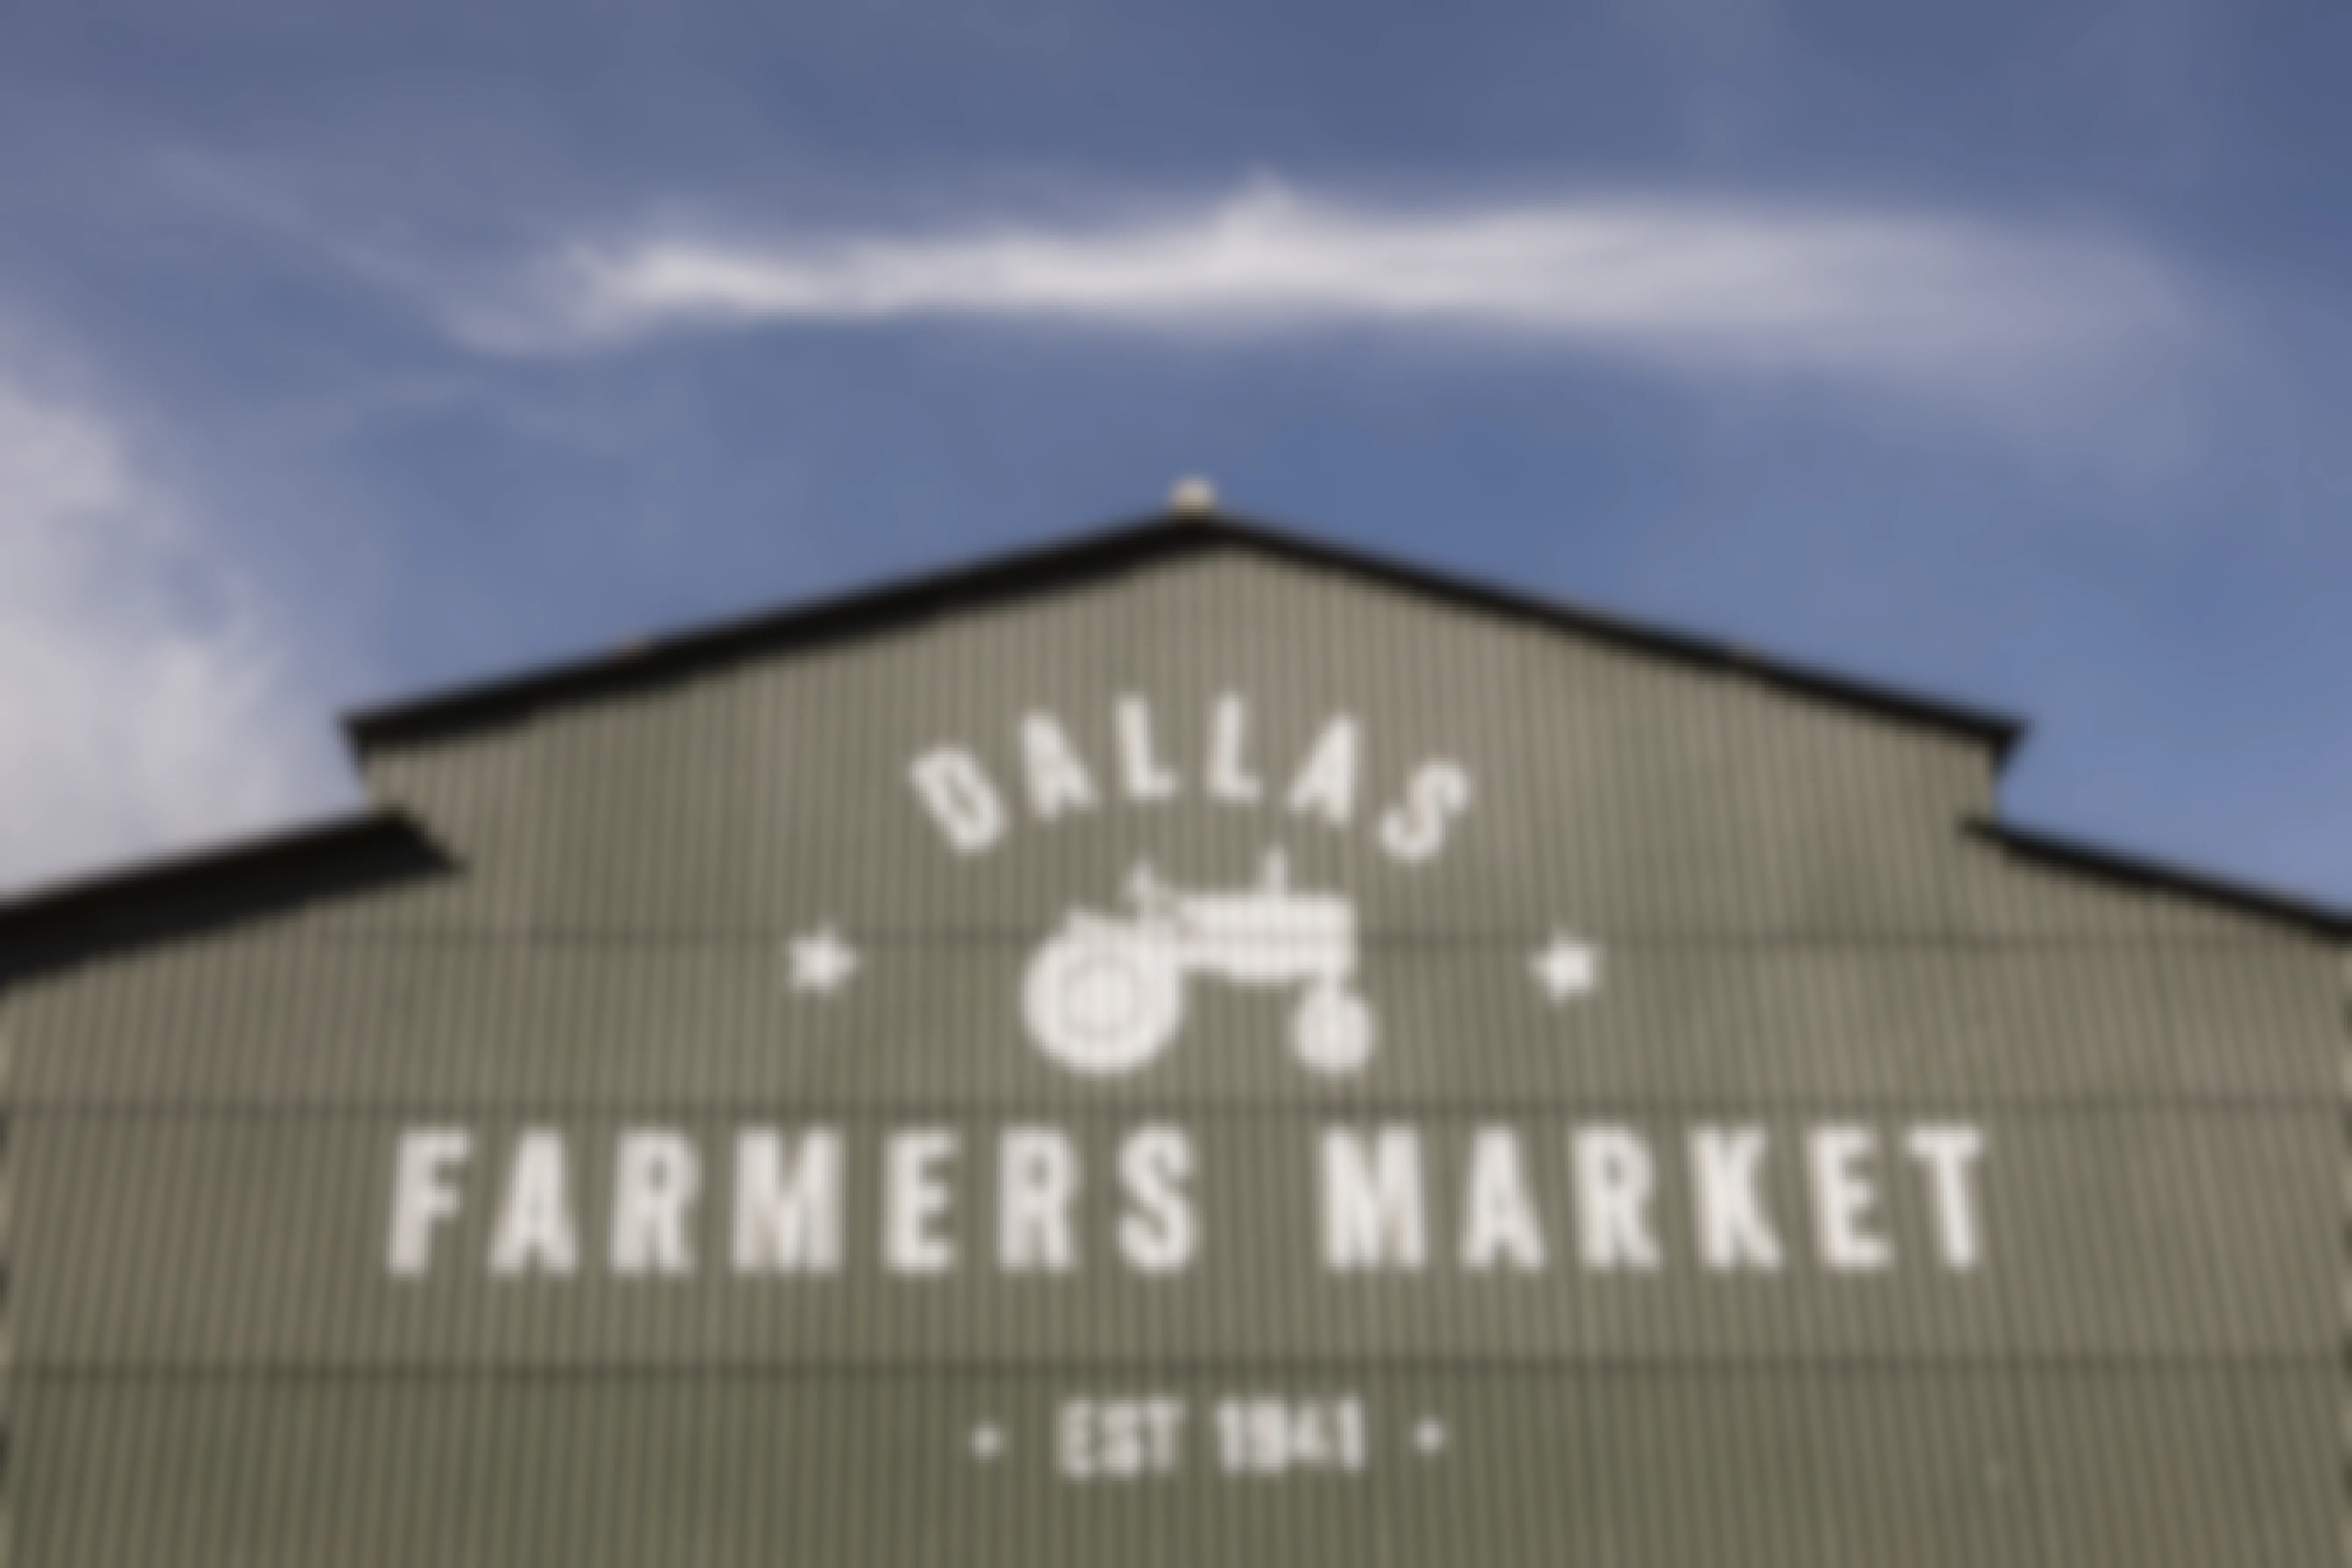 Farmers Market building in Dallas, Texas.